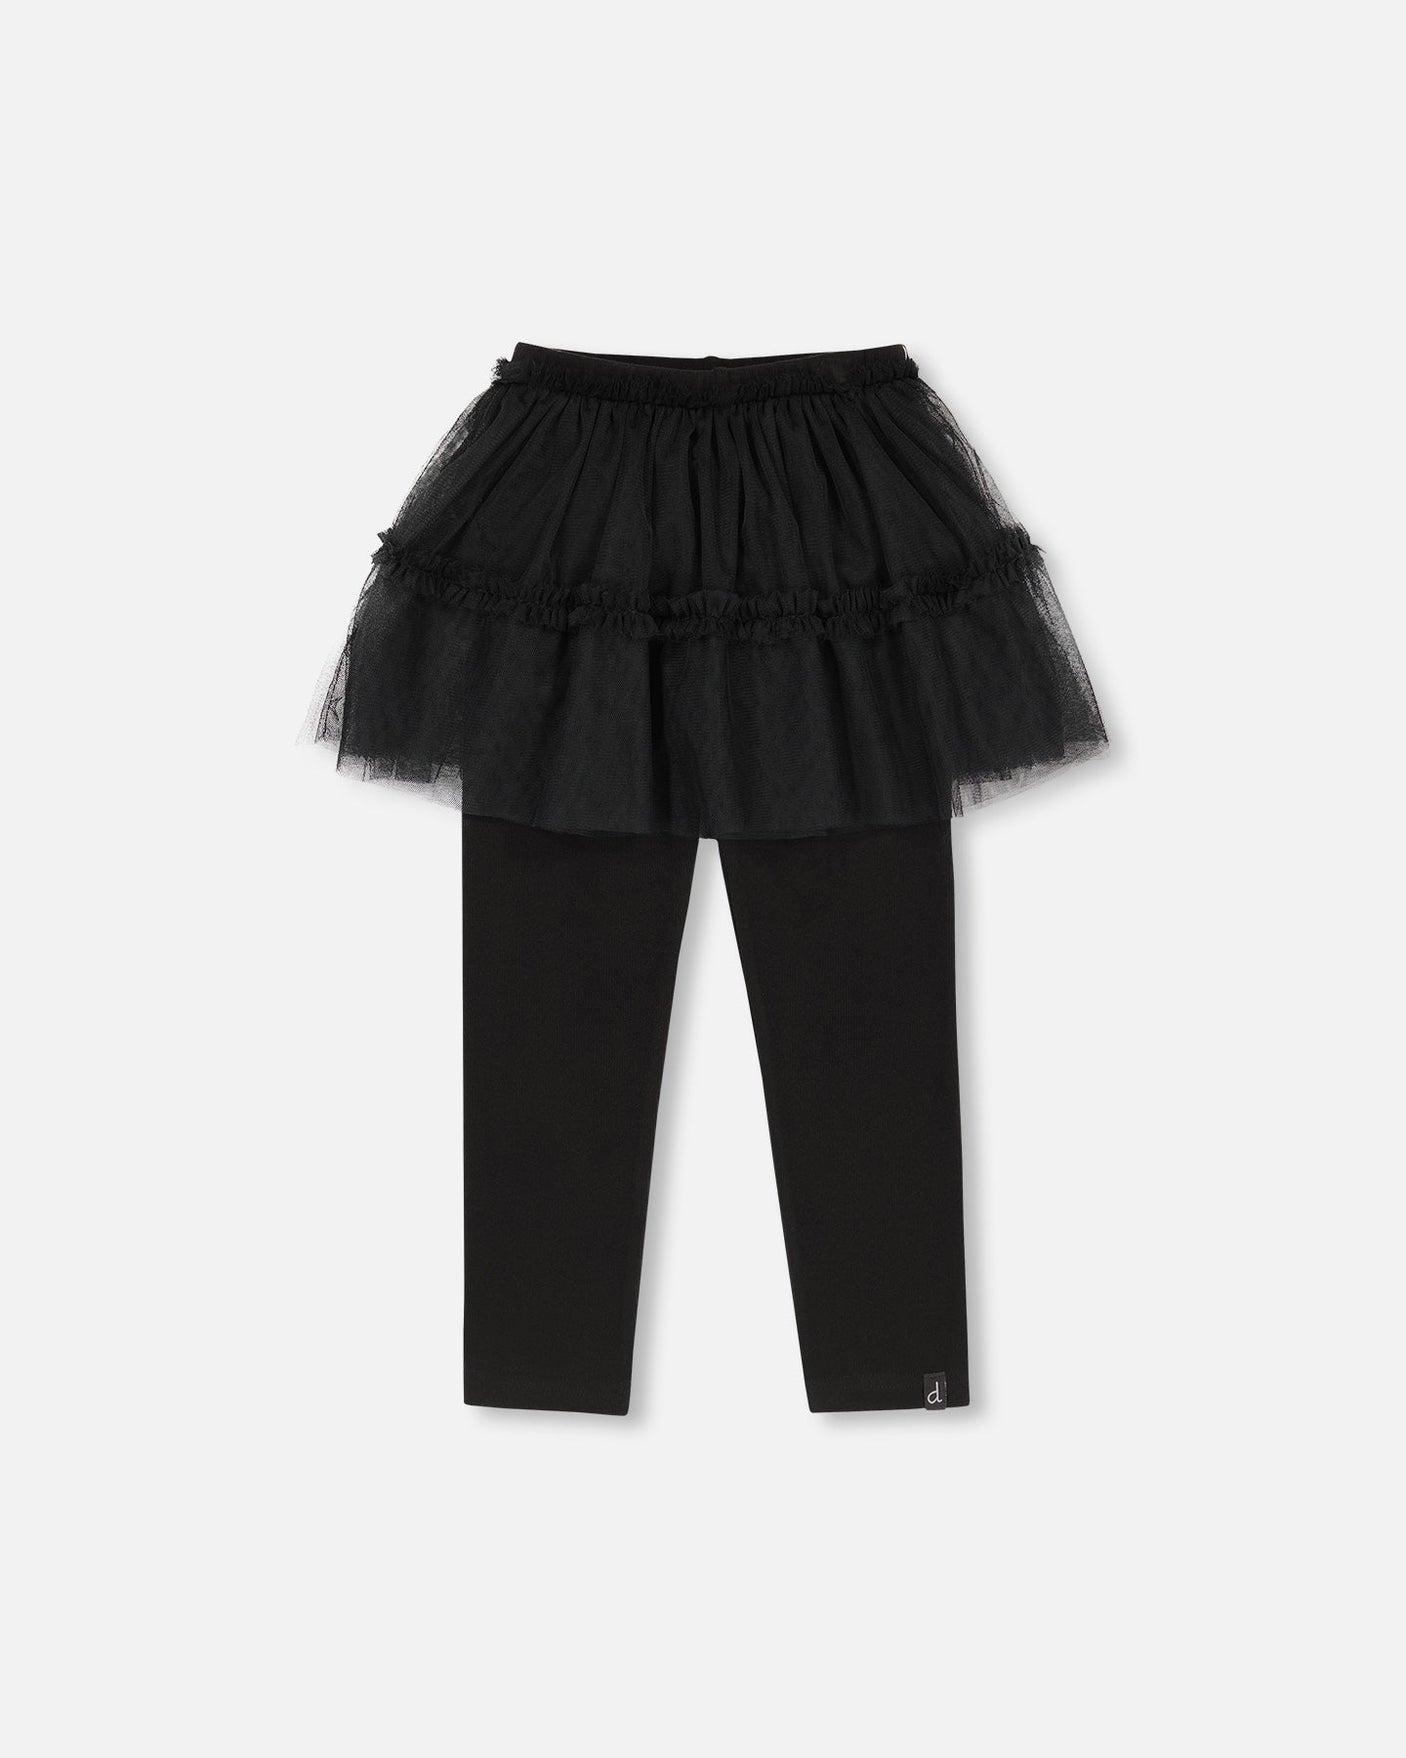 Super Soft Leggings With Tulle Skirt Black-0